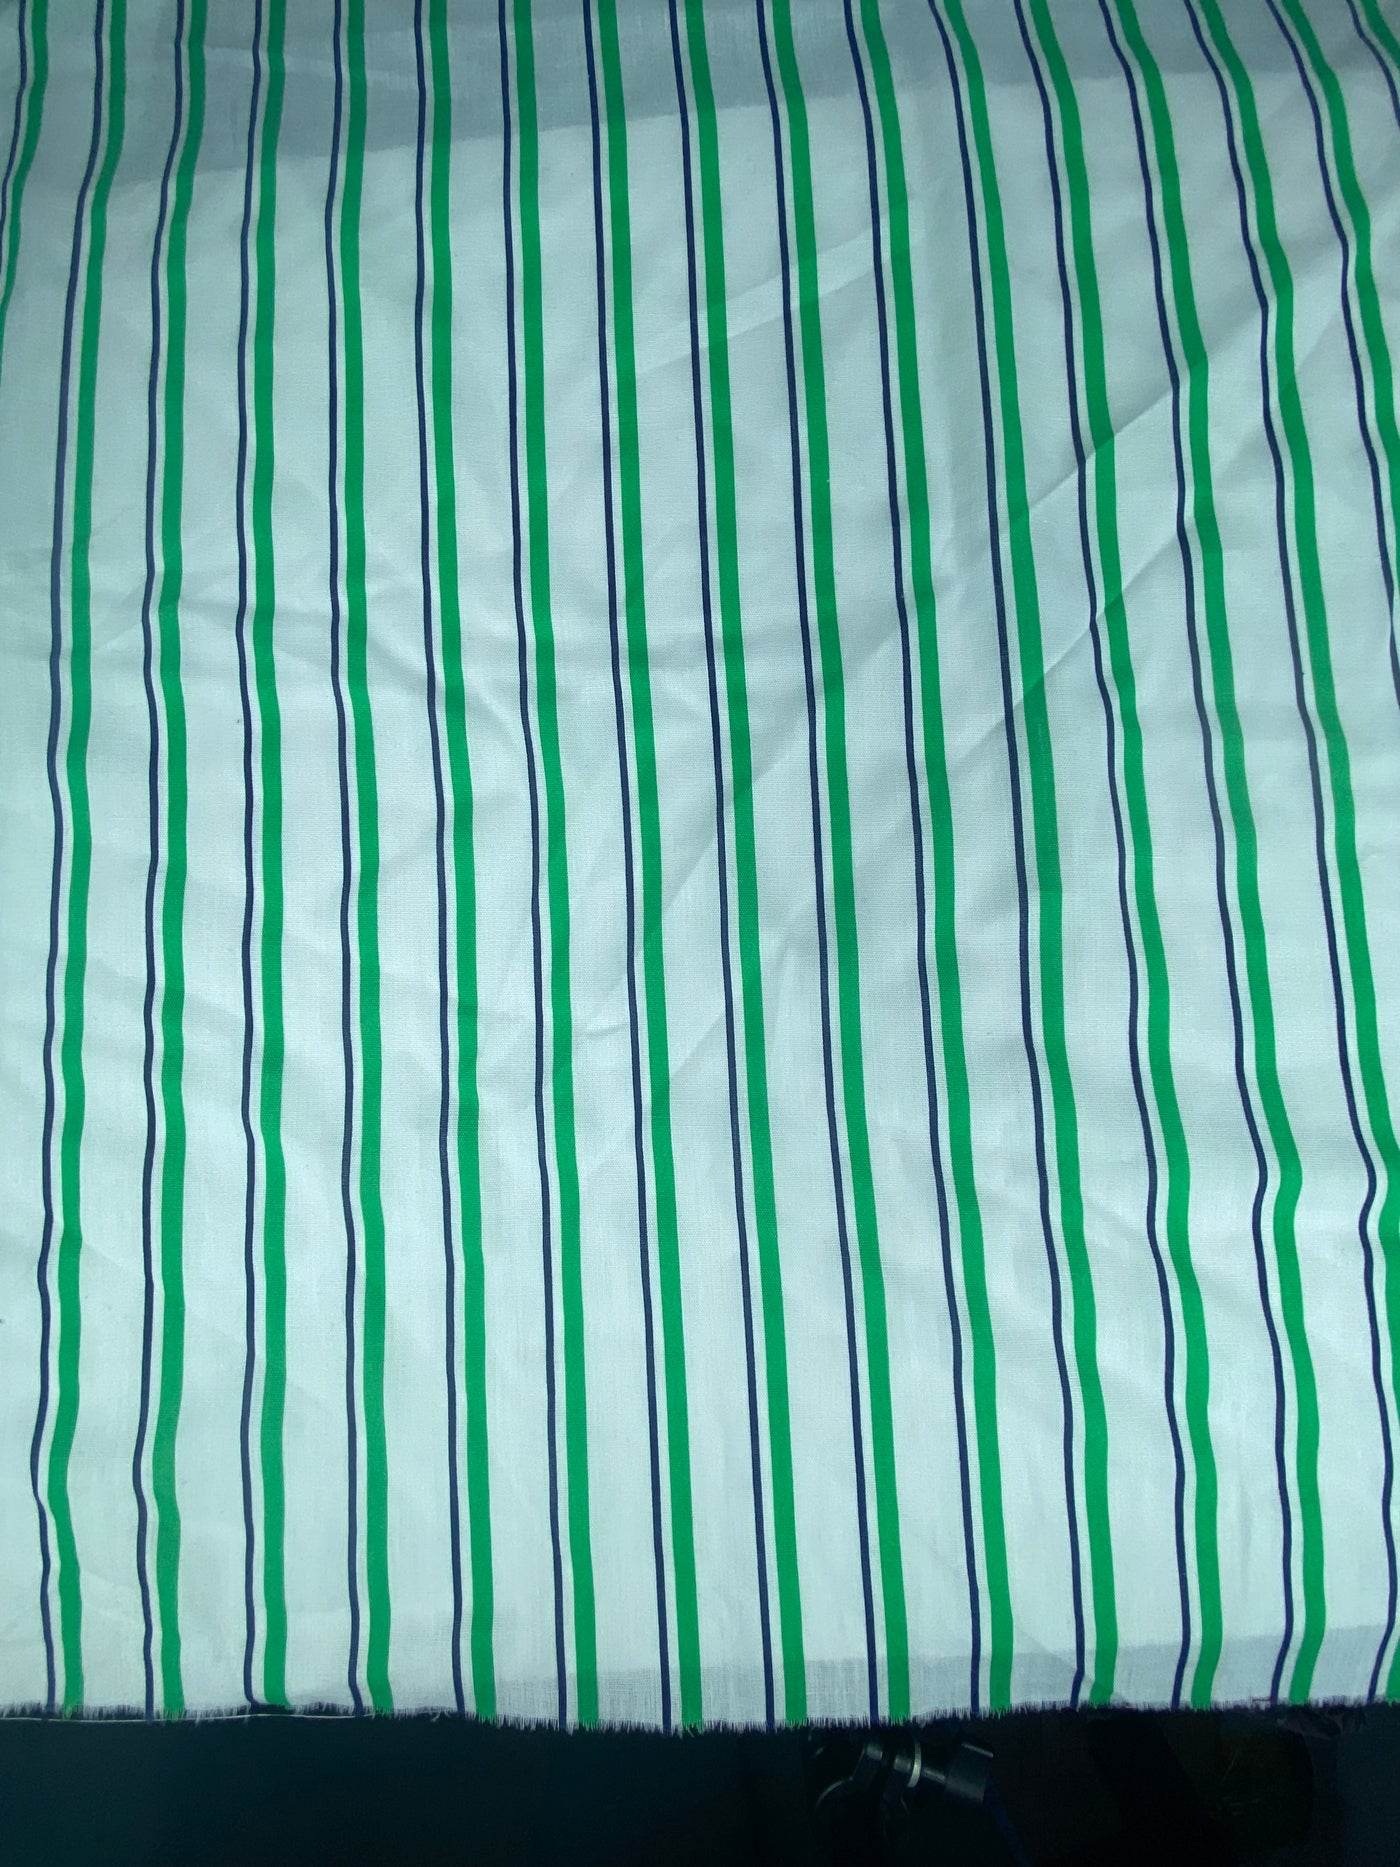 Striped Lightweight Cotton - White/Green/Navy